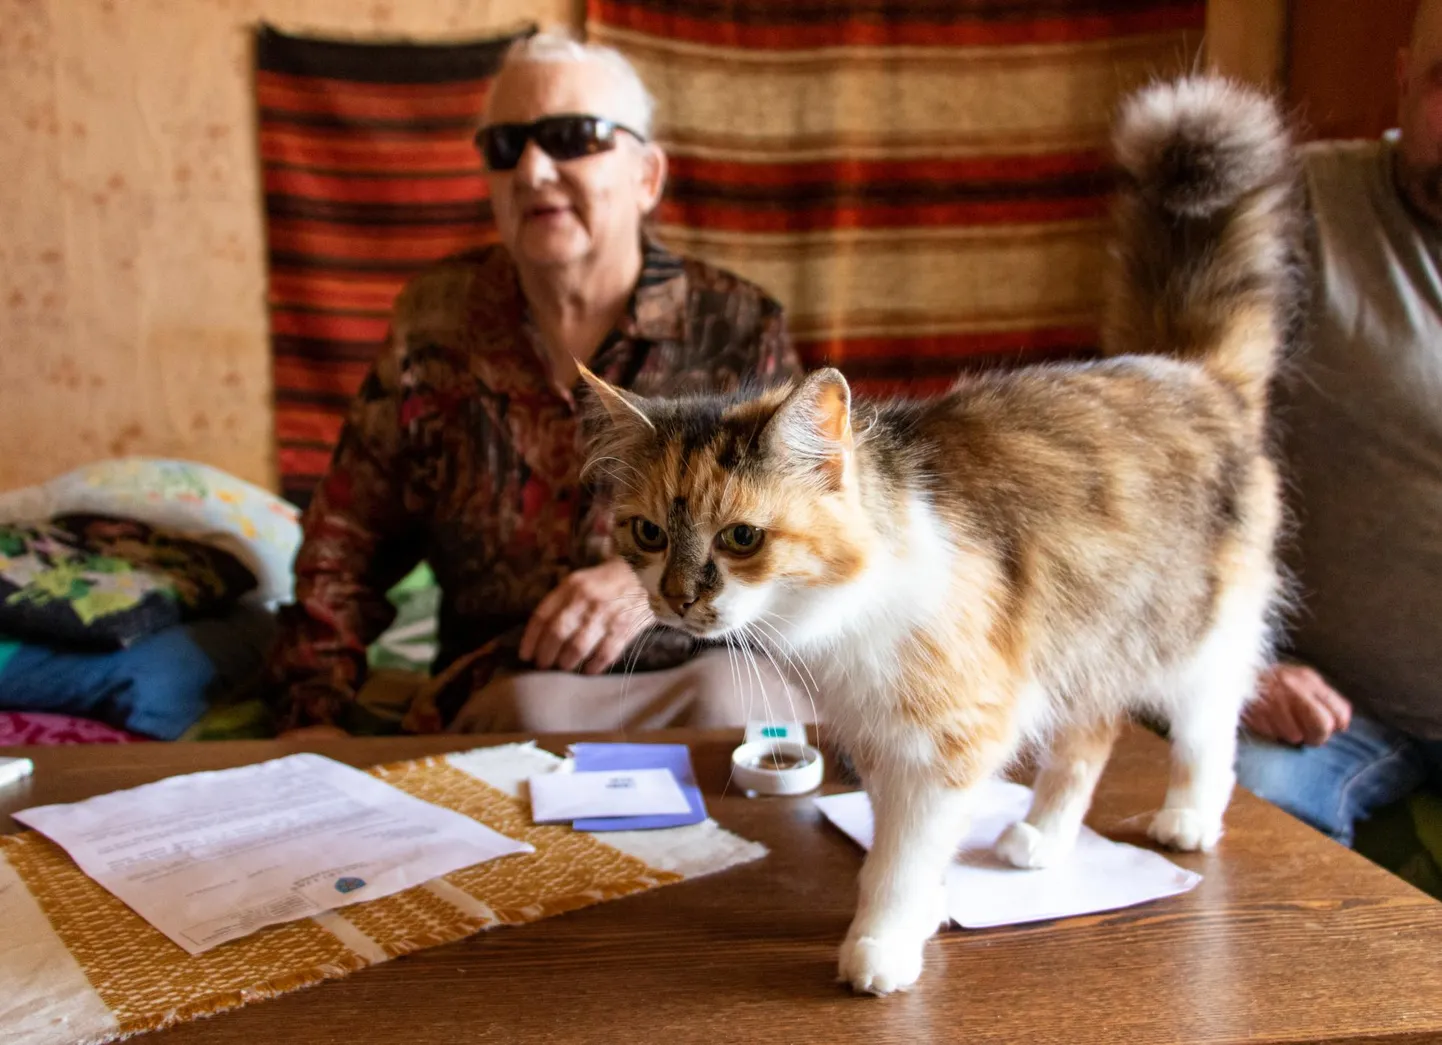 Vastemõisas elav 83-aastane Maimu Parm püsib rõõmsameelne hoolimata sellest, et tal on südamestimulaator, kehv silmanägemine ja pärast isikukoodi muutumist raskusi ravimite kättesaamise ja arsti juurde pääsemisega. Talle pakub seltsi uudishimulik kass Pipi.